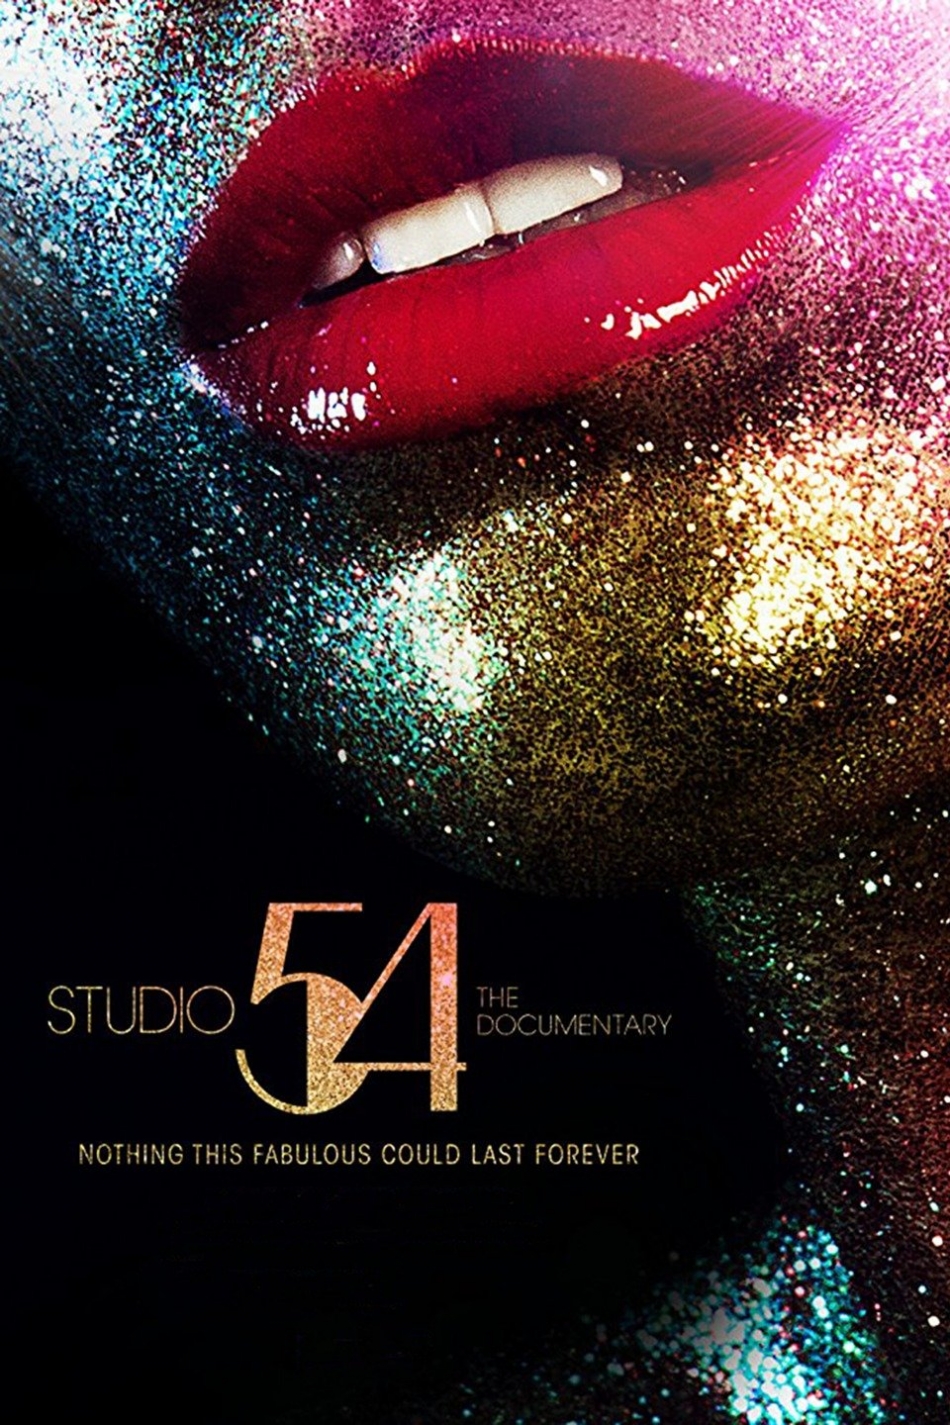 Studio 54 aGLIFF Film Review